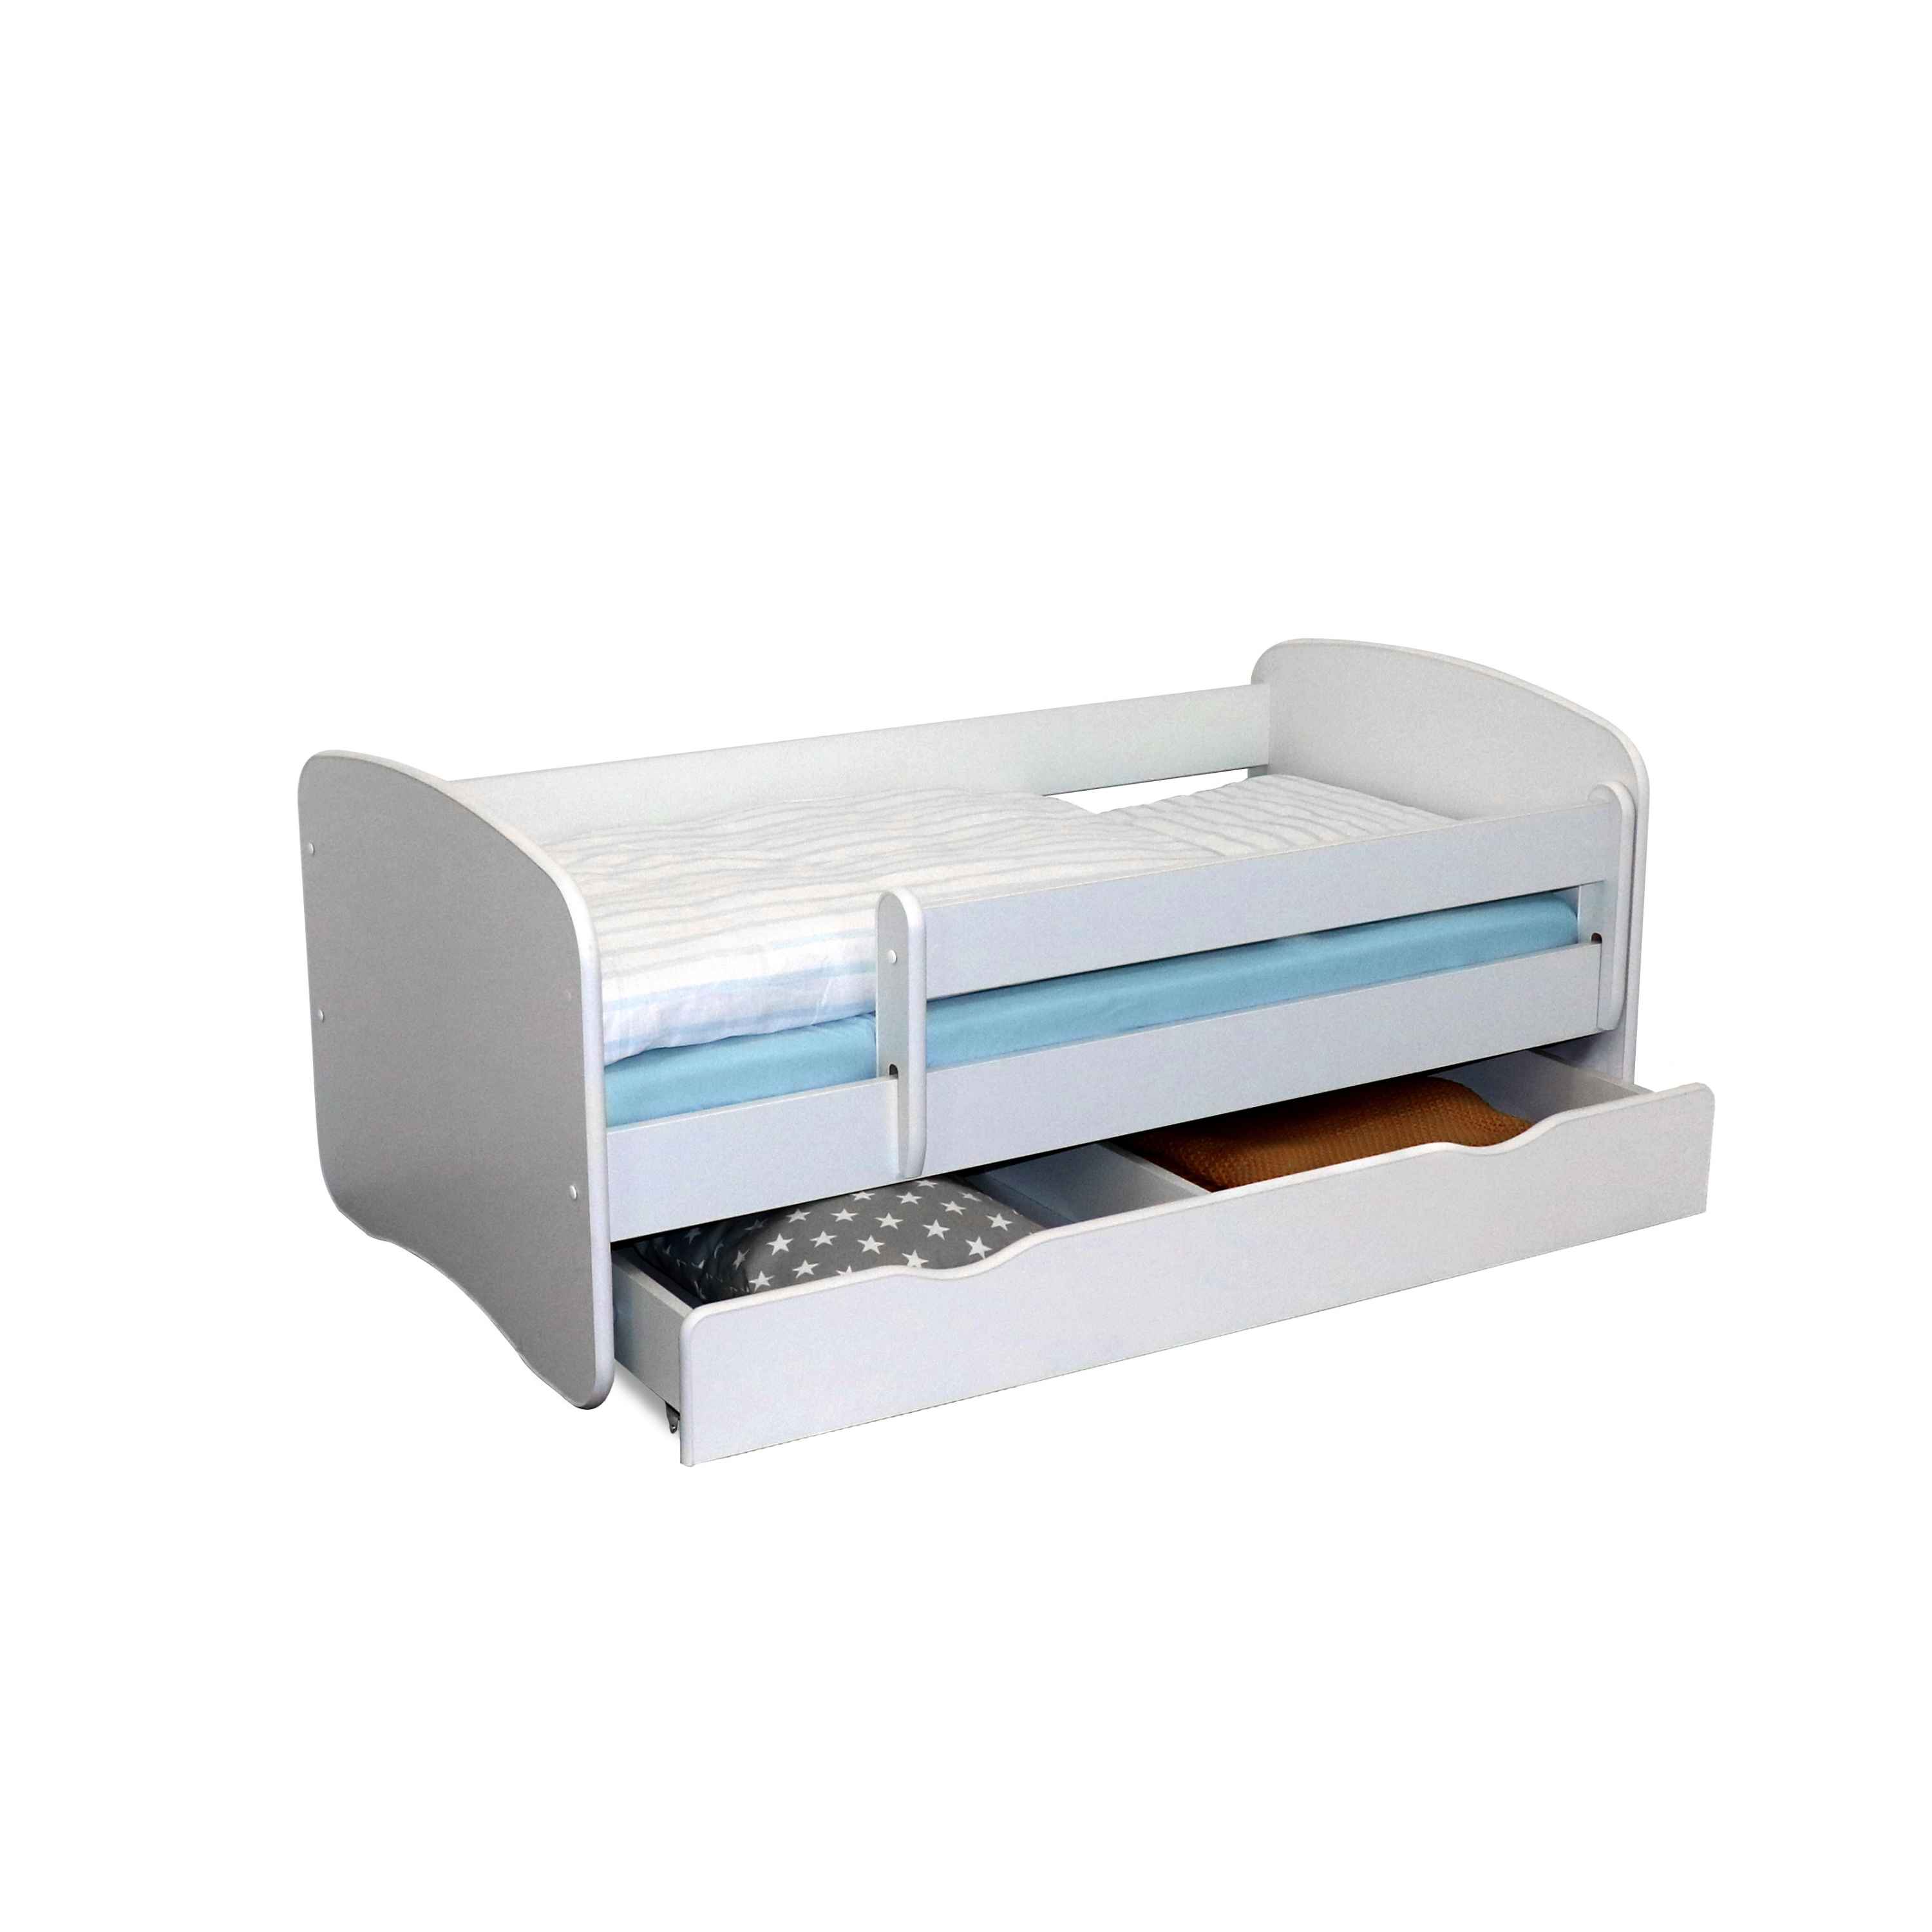 Kombi-Set Belfino – Kinderbett mit Matratze und Rausfallschutz, inkl. Lattenrost, 80x160 cm